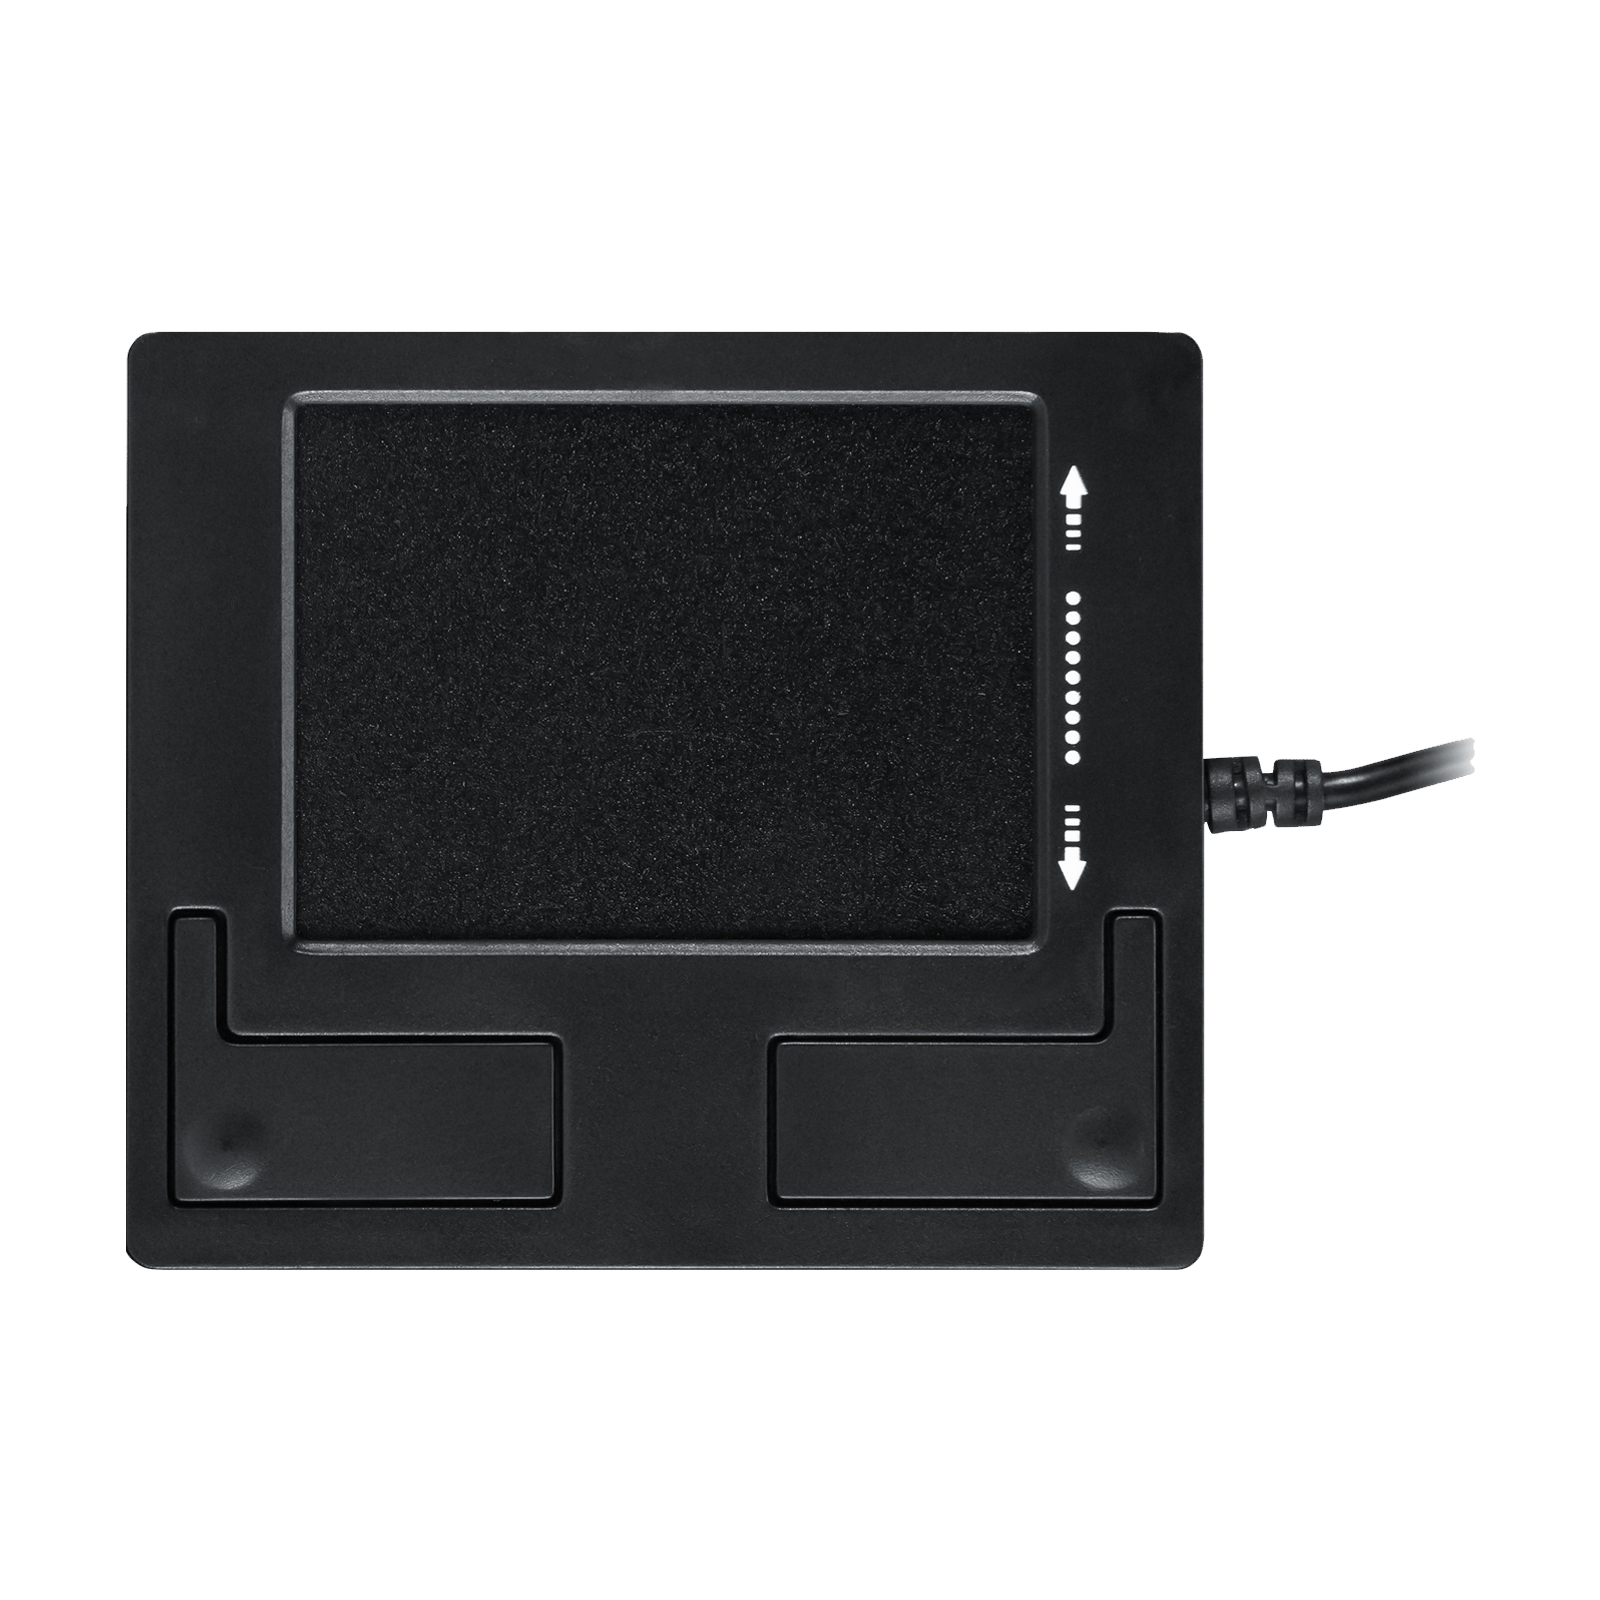 PERIPAD-501 II - Wired Touchpad - Perixx Europe